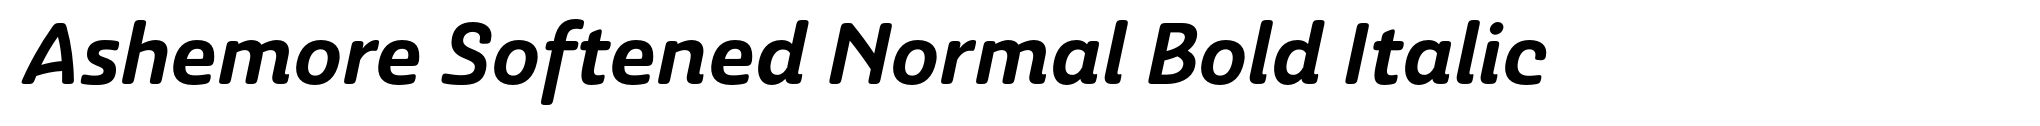 Ashemore Softened Normal Bold Italic image